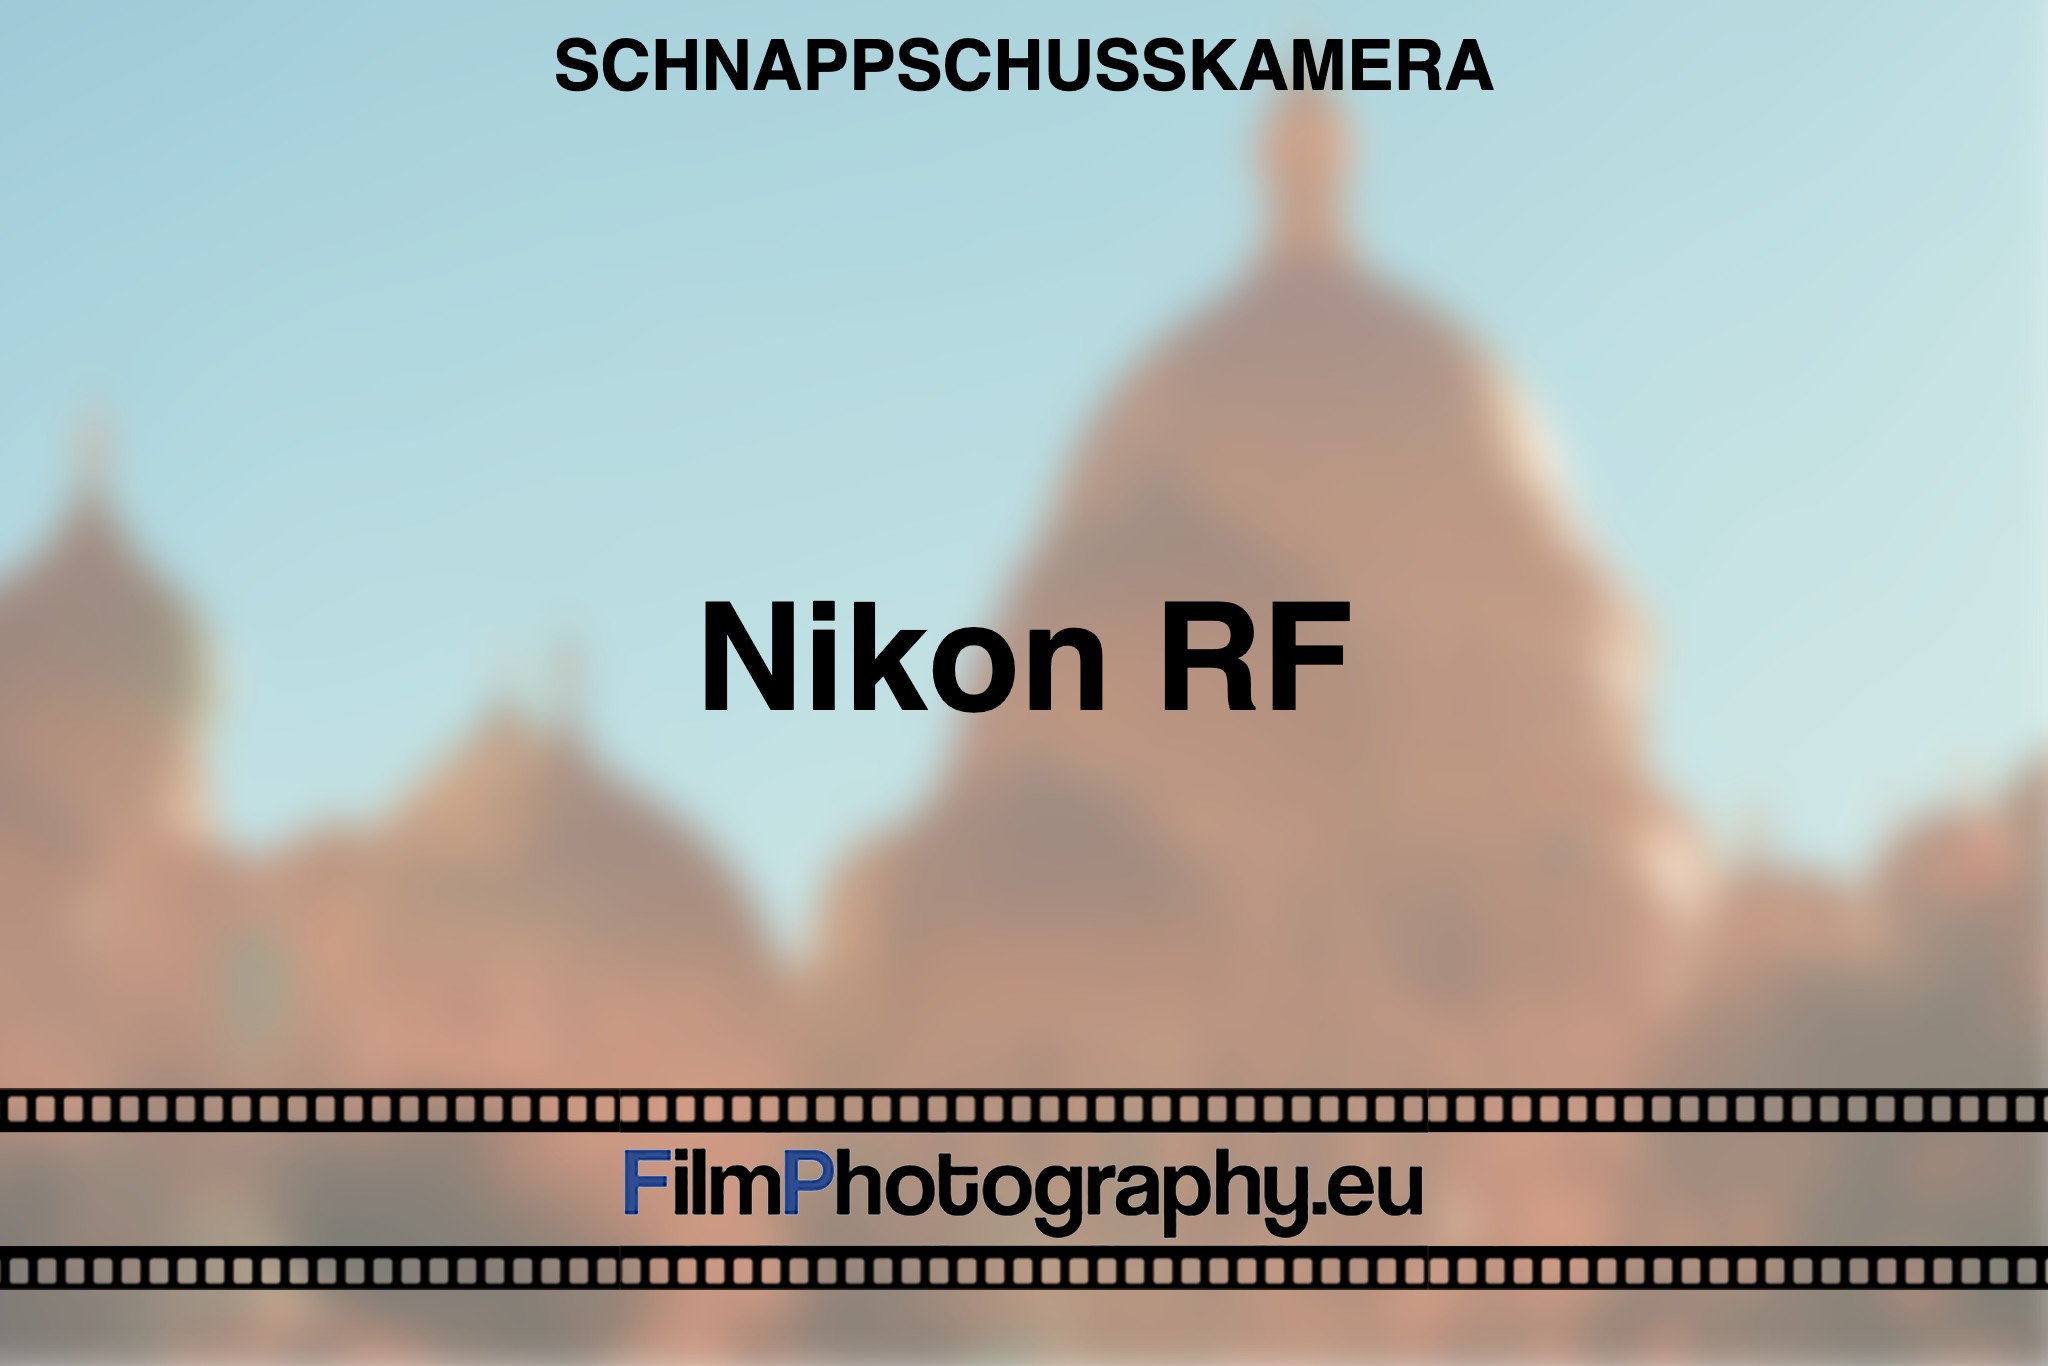 nikon-rf-schnappschusskamera-bnv